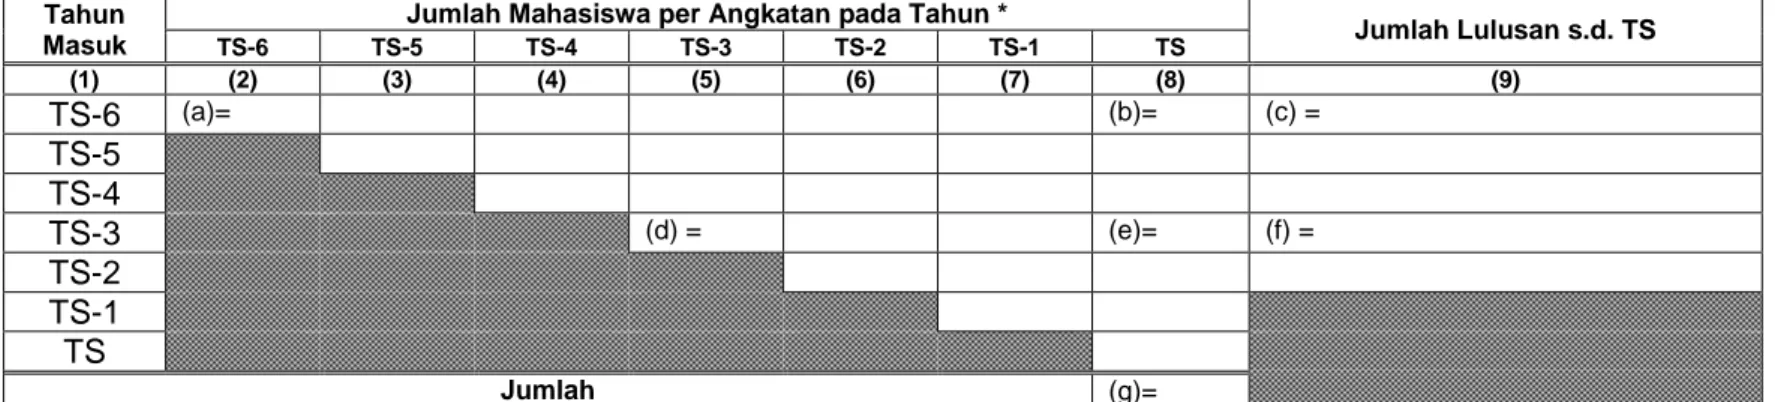 Tabel A. Data jumlah mahasiswa  tahap akademik tujuh tahun terakhir dengan mengikuti format tabel berikut